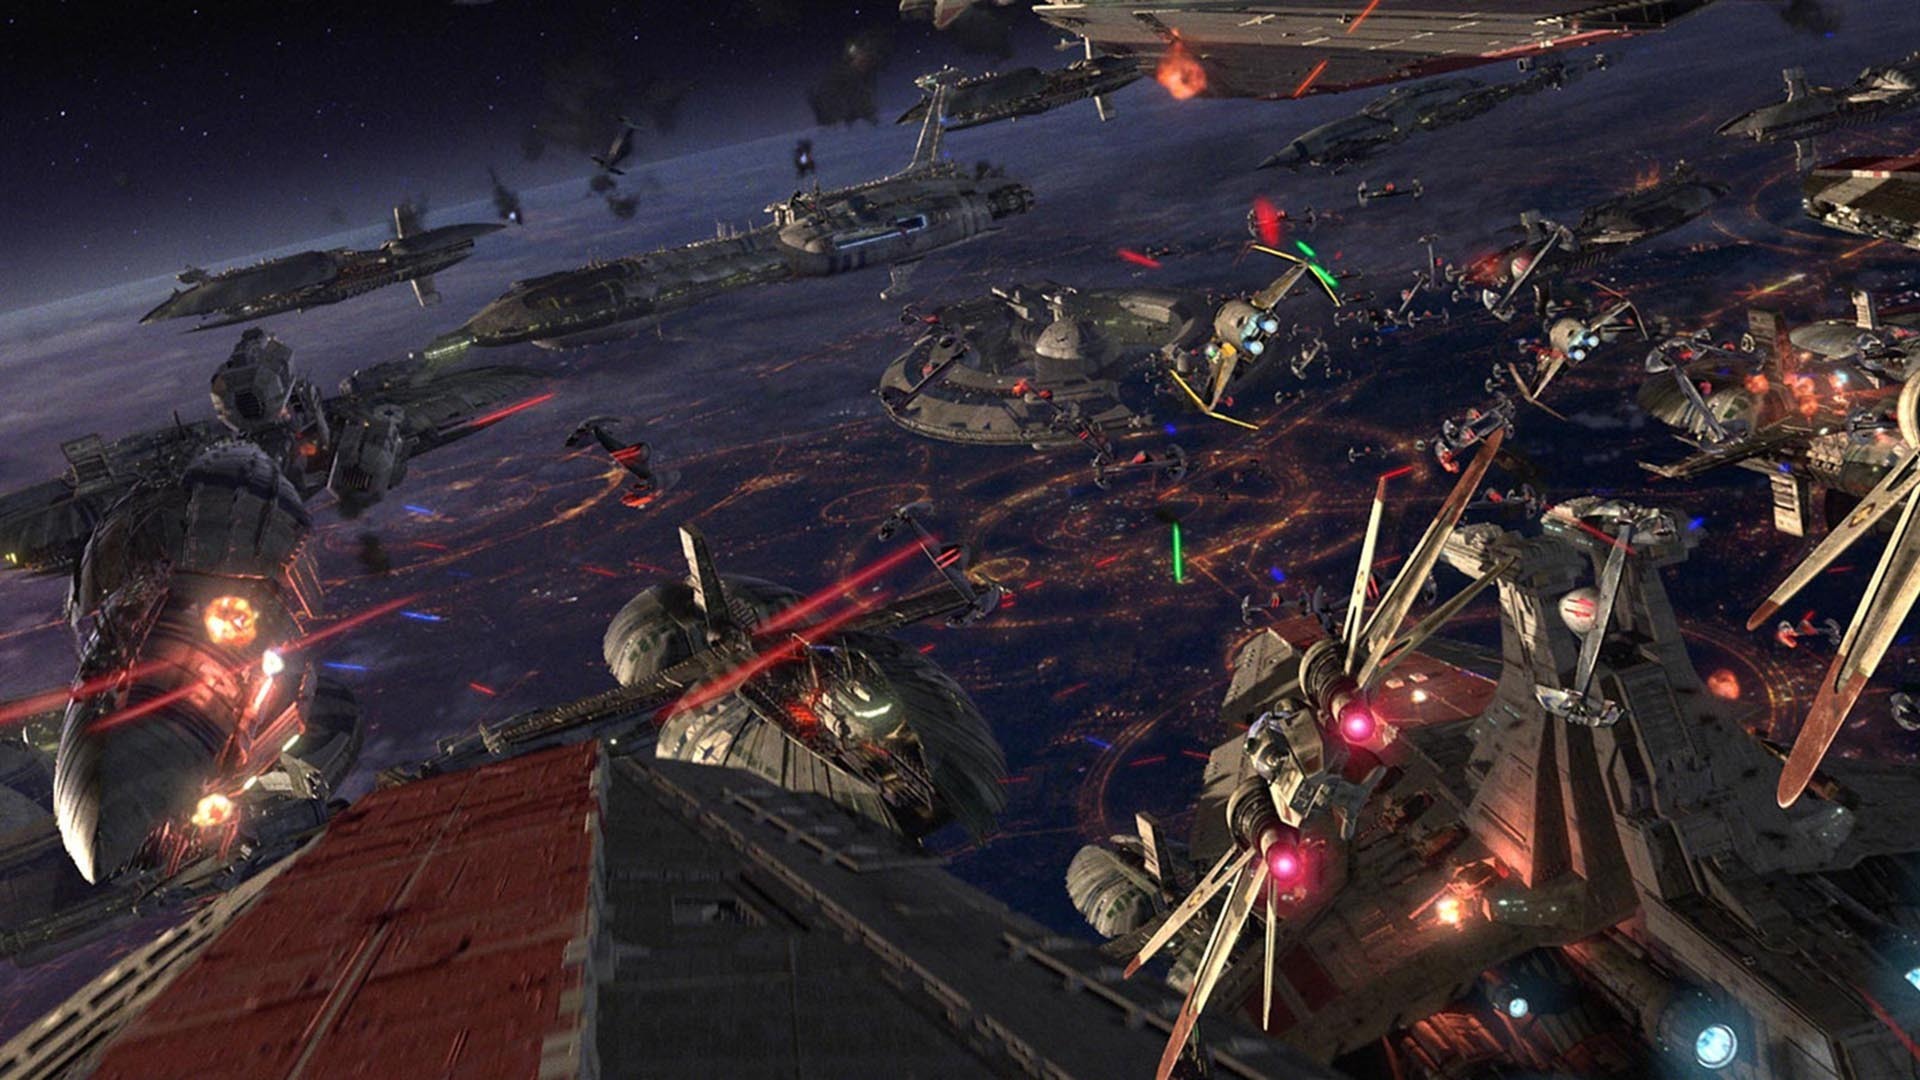 50] Star Wars Space Battle Wallpaper on